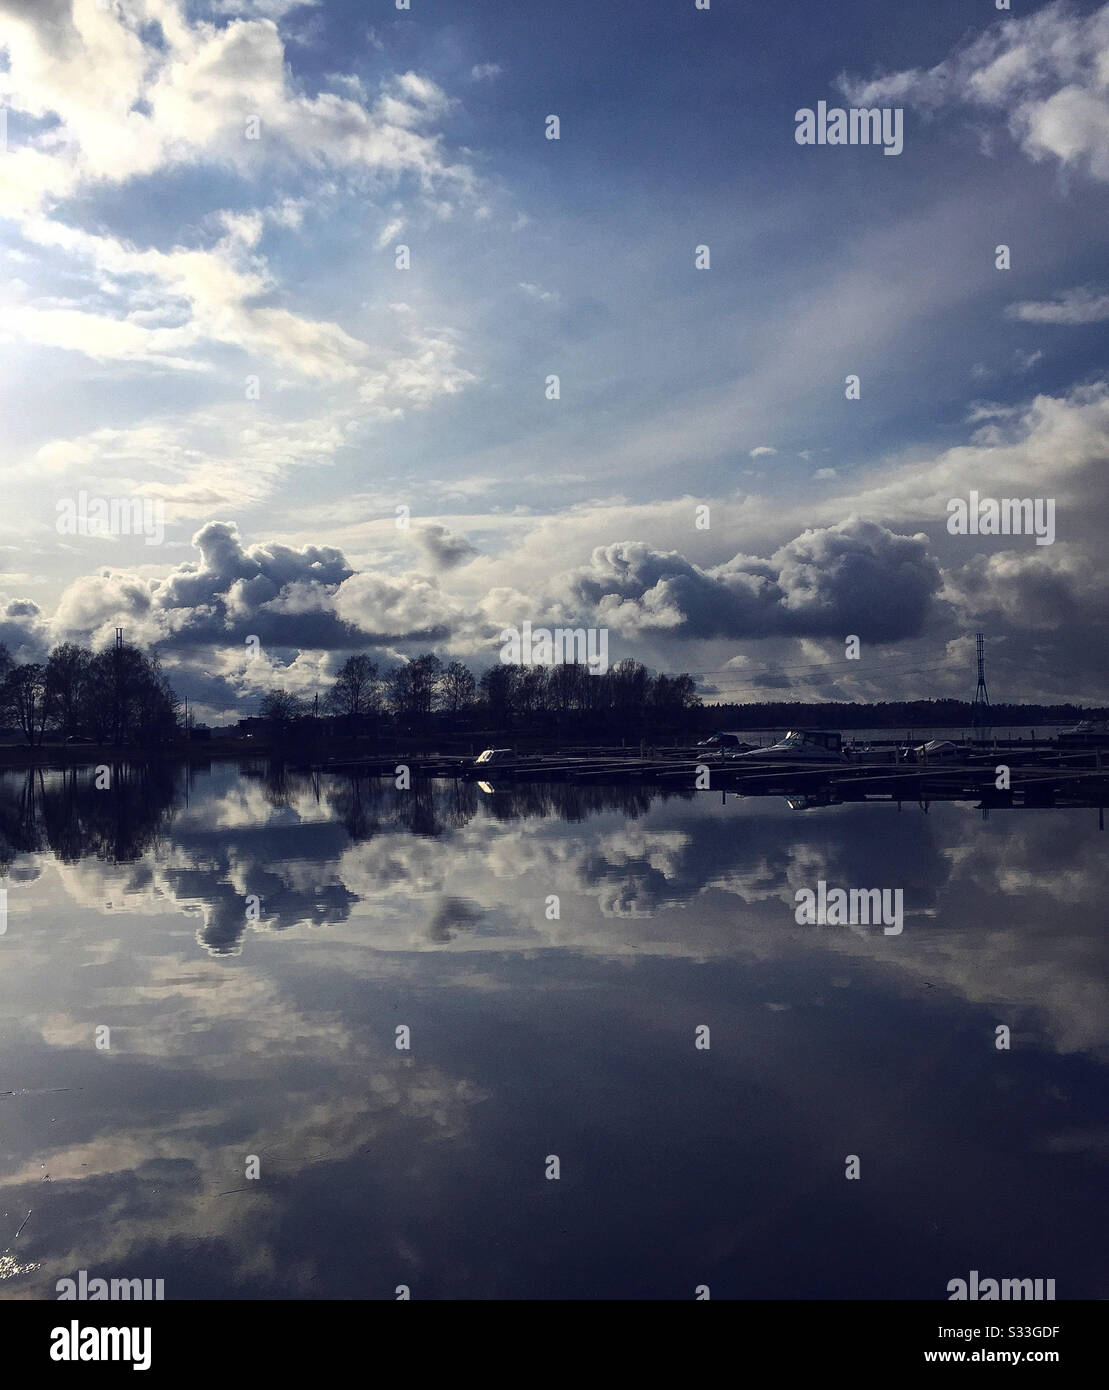 el cielo y las nubes se reflejan en el agua, fondo azul Foto de stock